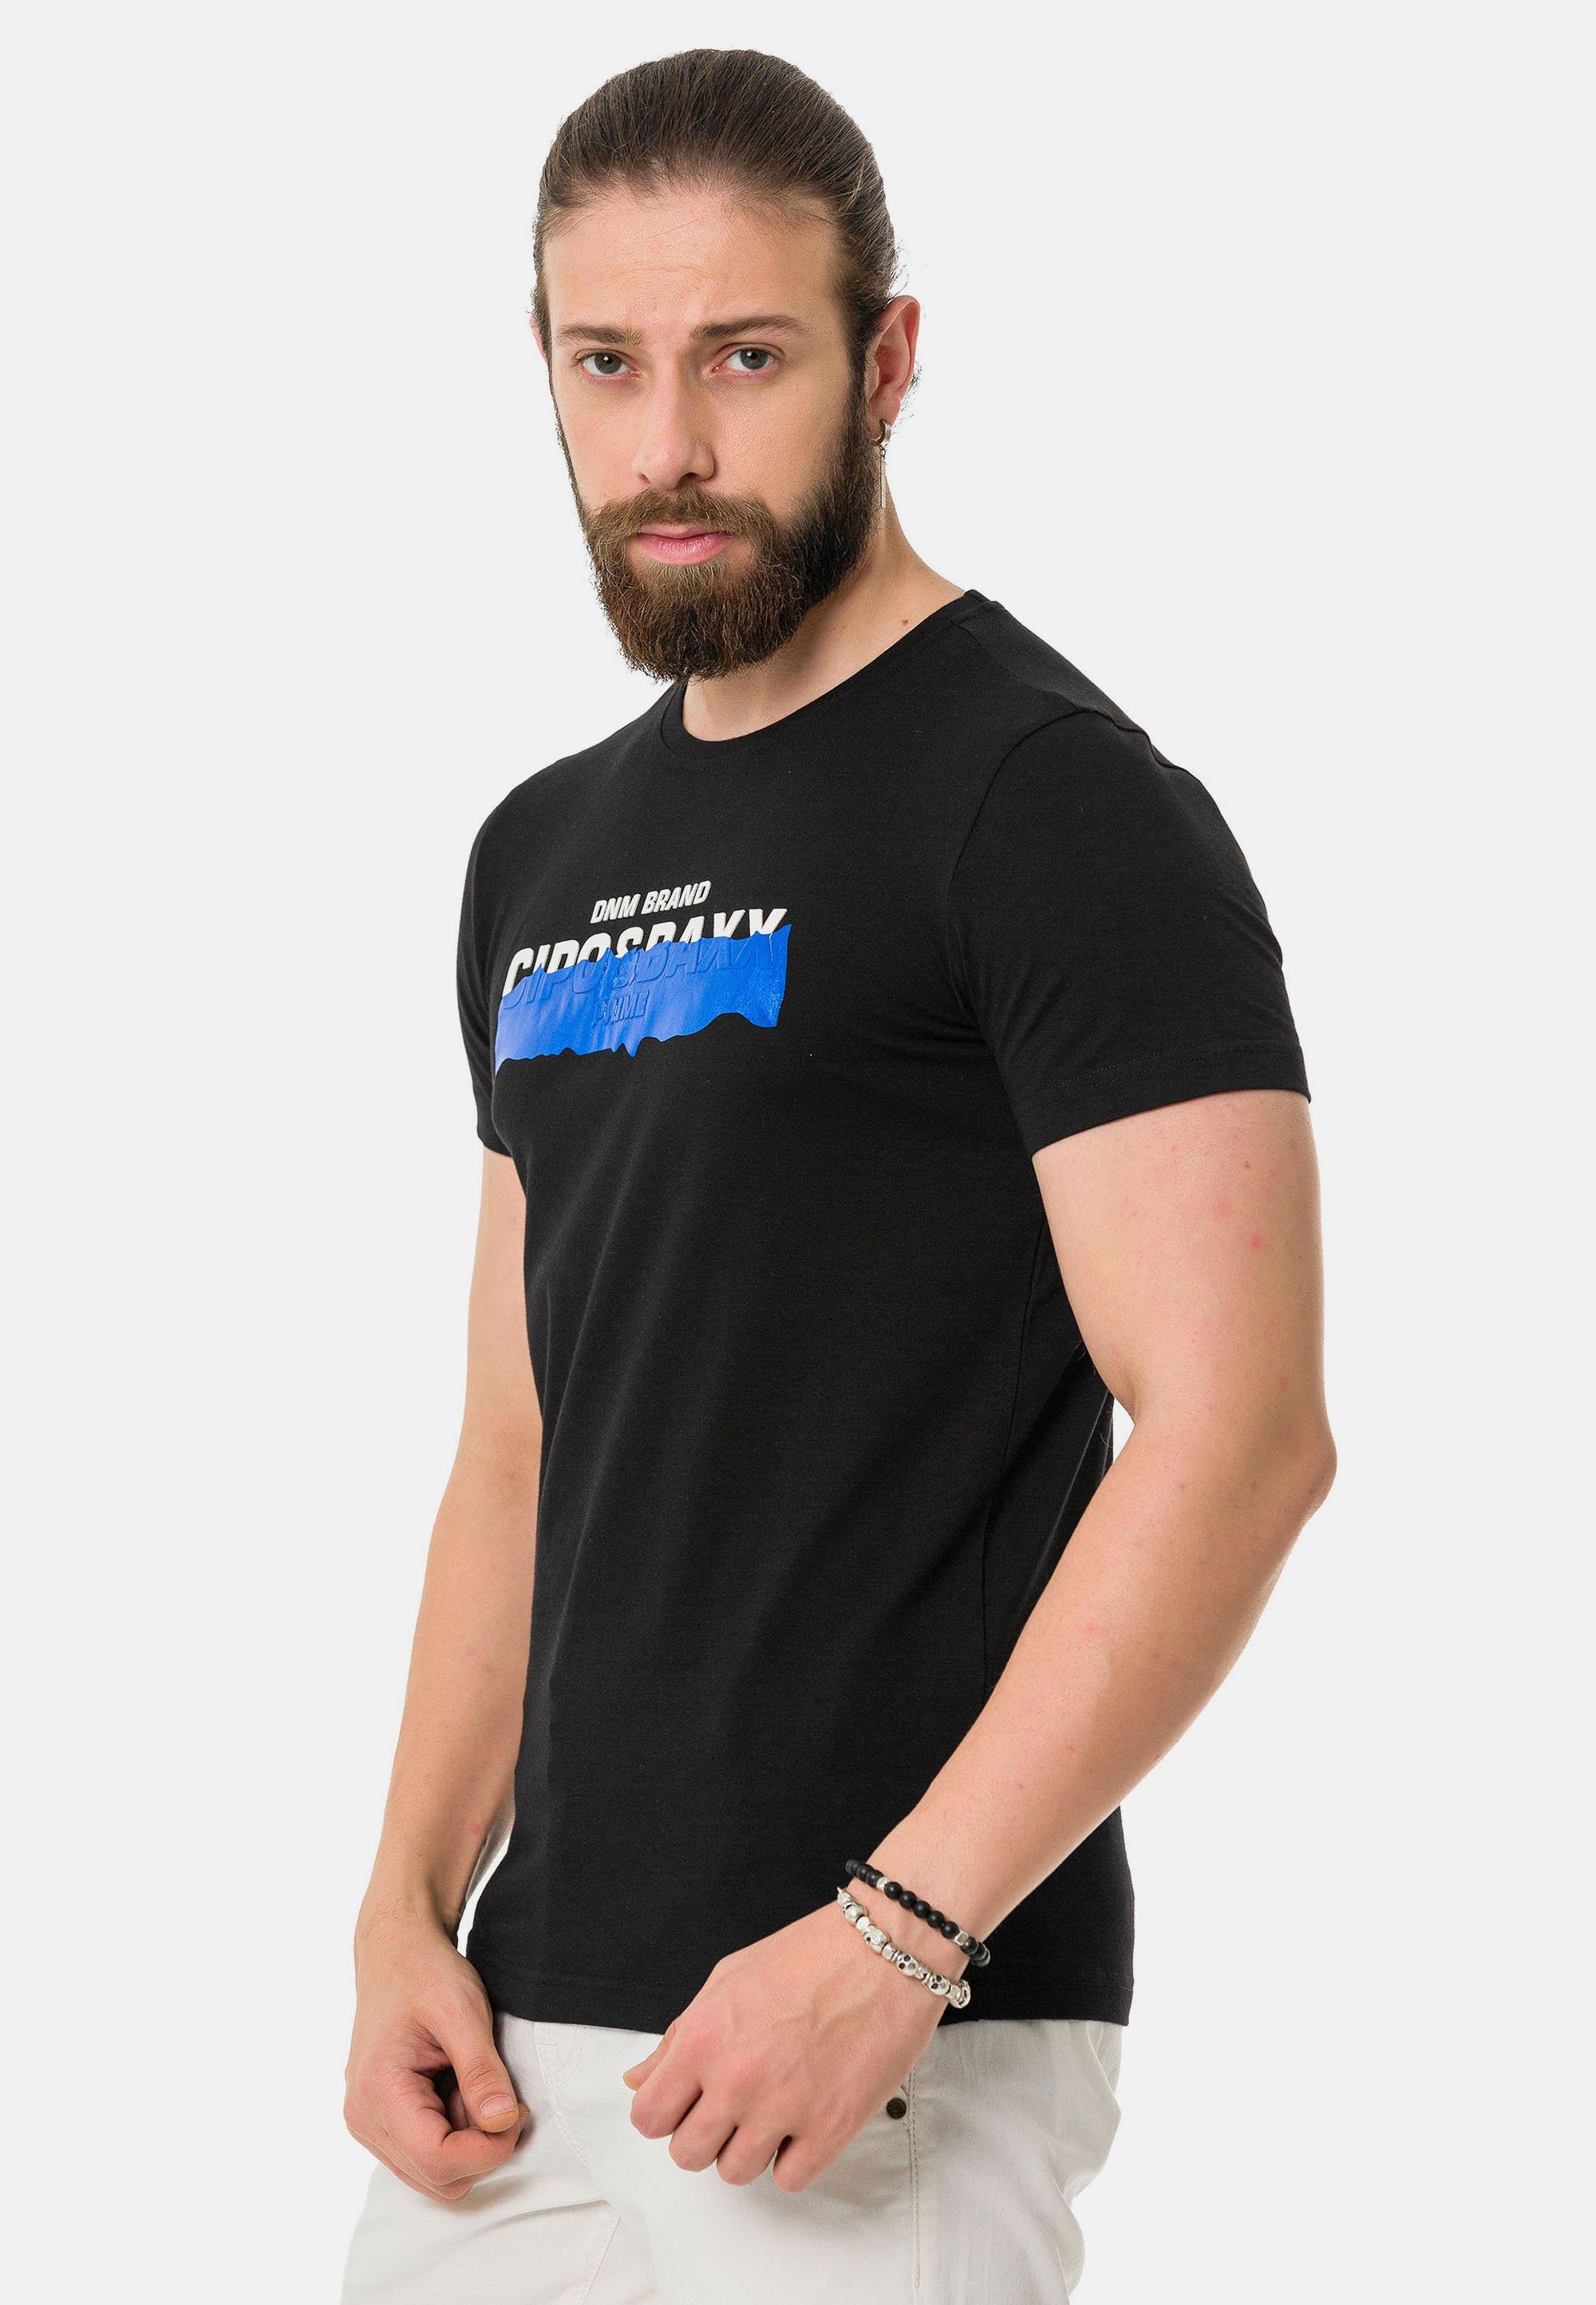 Markenprint & T-Shirt coolem Baxx Cipo mit schwarz